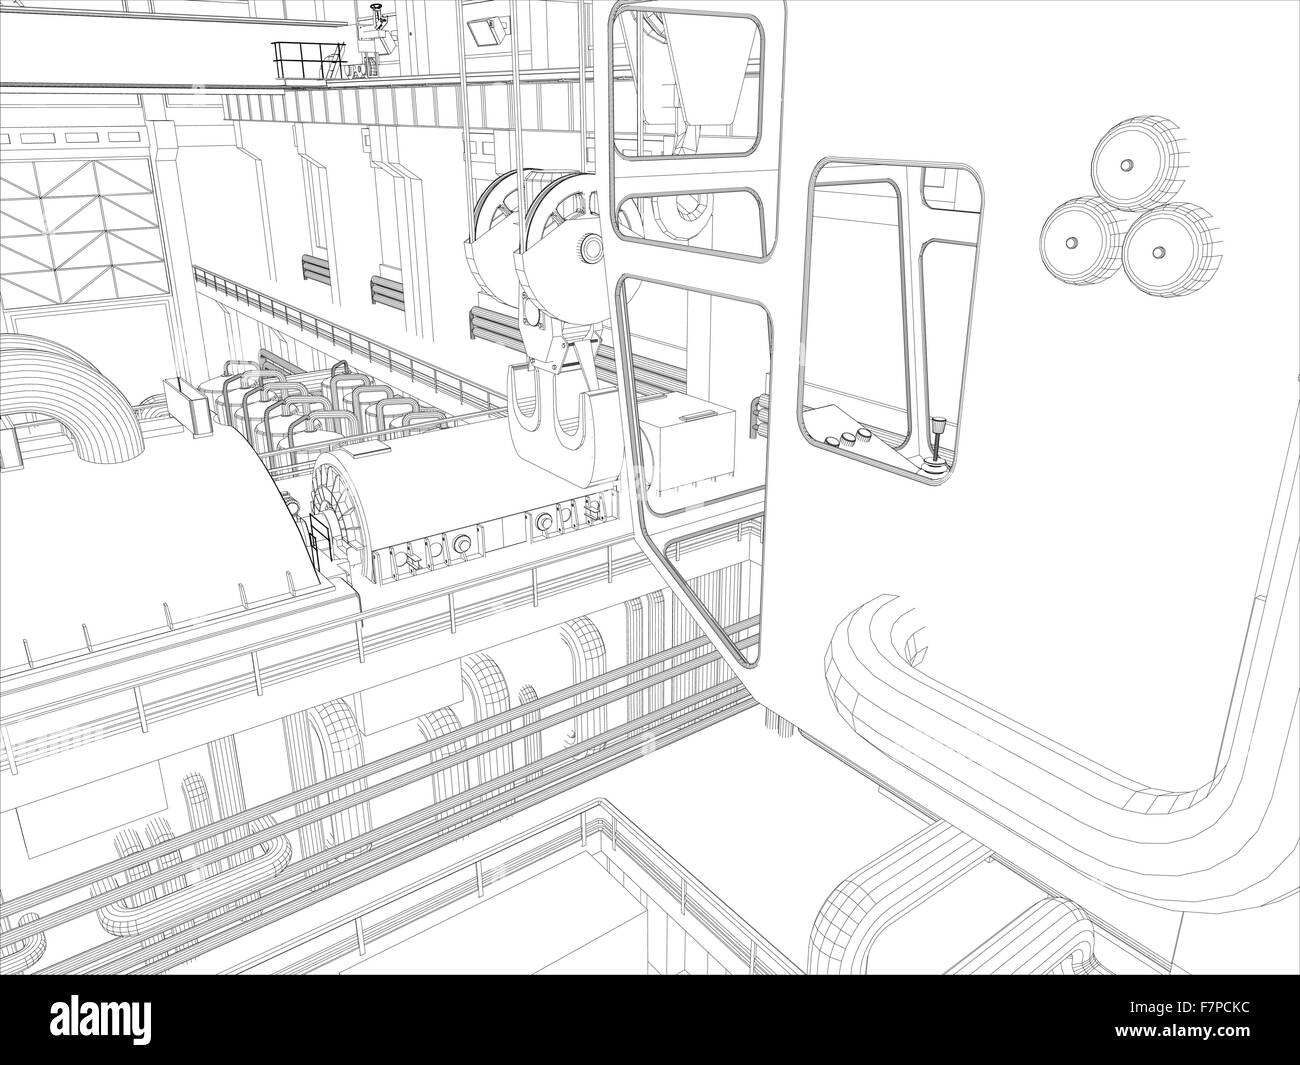 Gantry Crane in un ambiente di fabbrica. Filo-telaio Illustrazione Vettoriale